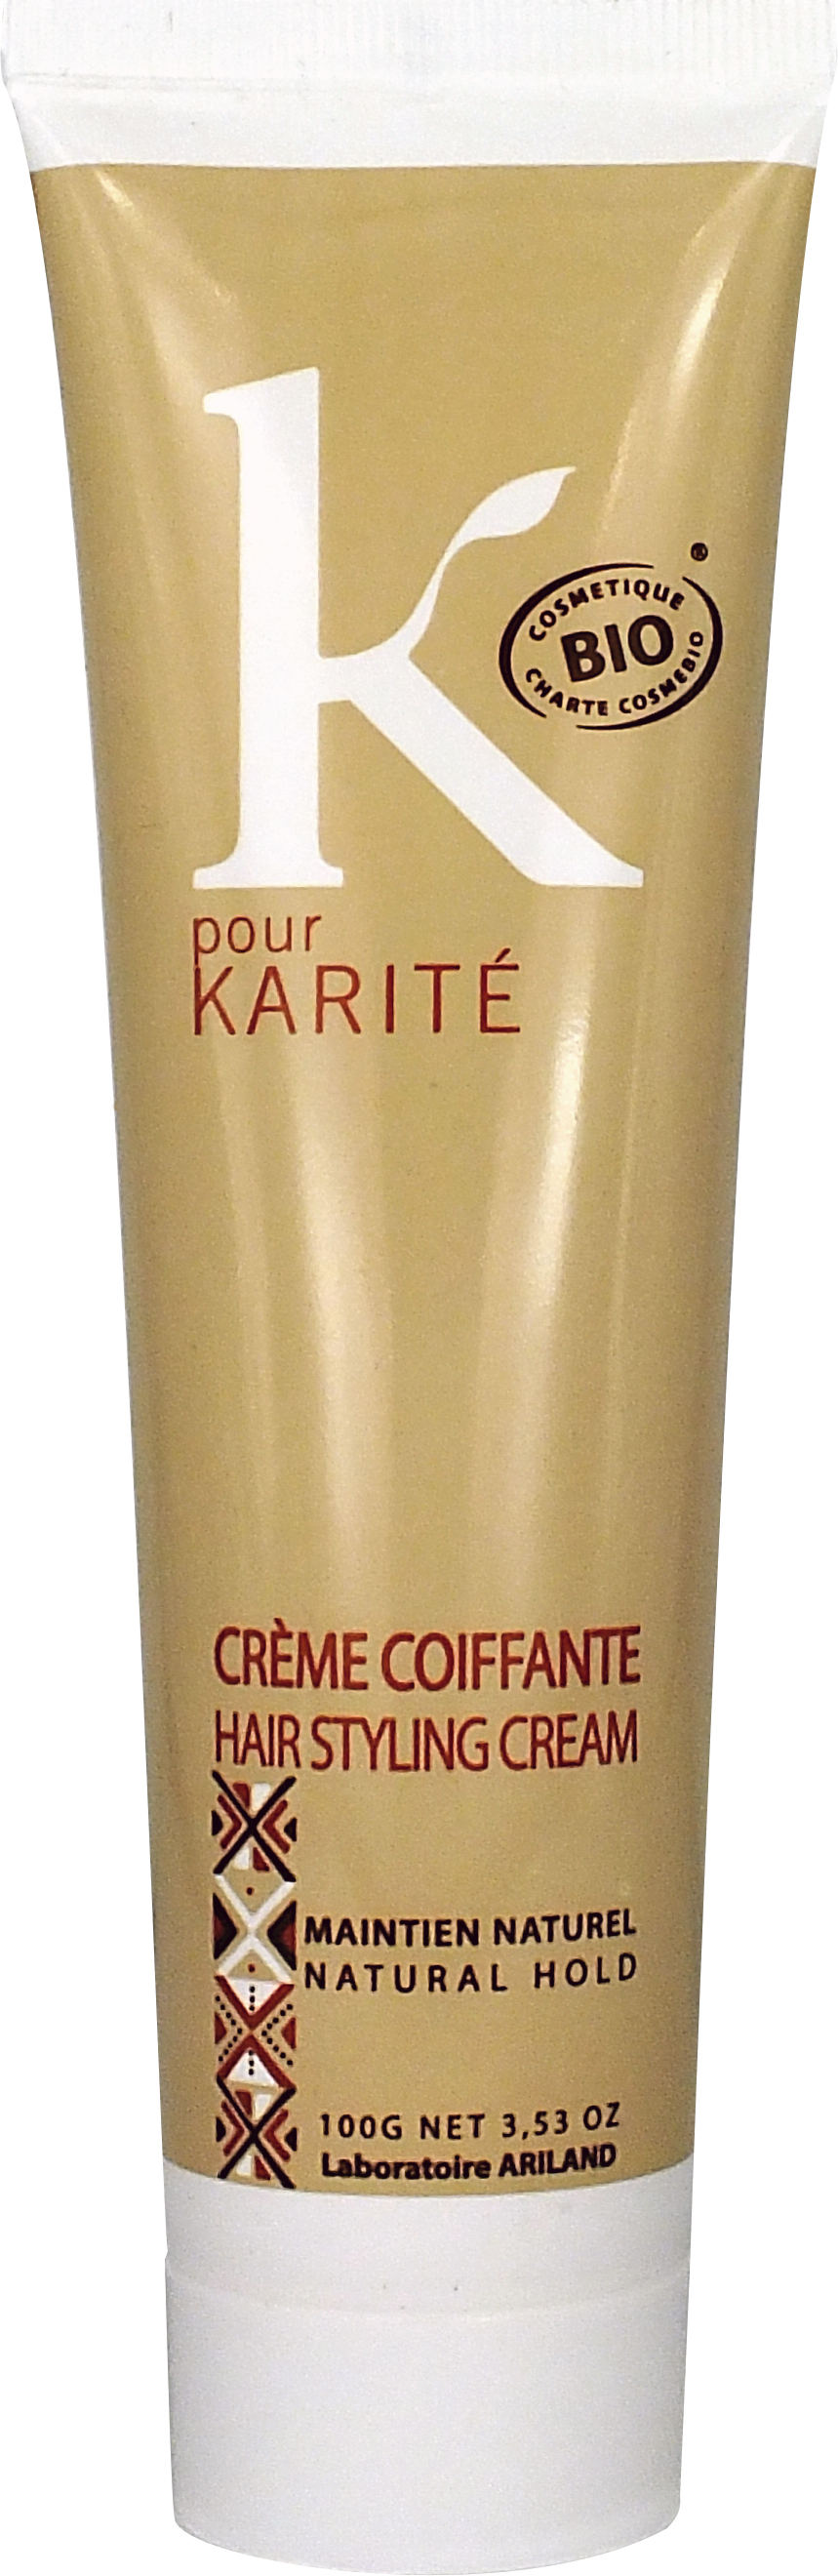 K Pour Karité Styling Cream 100g